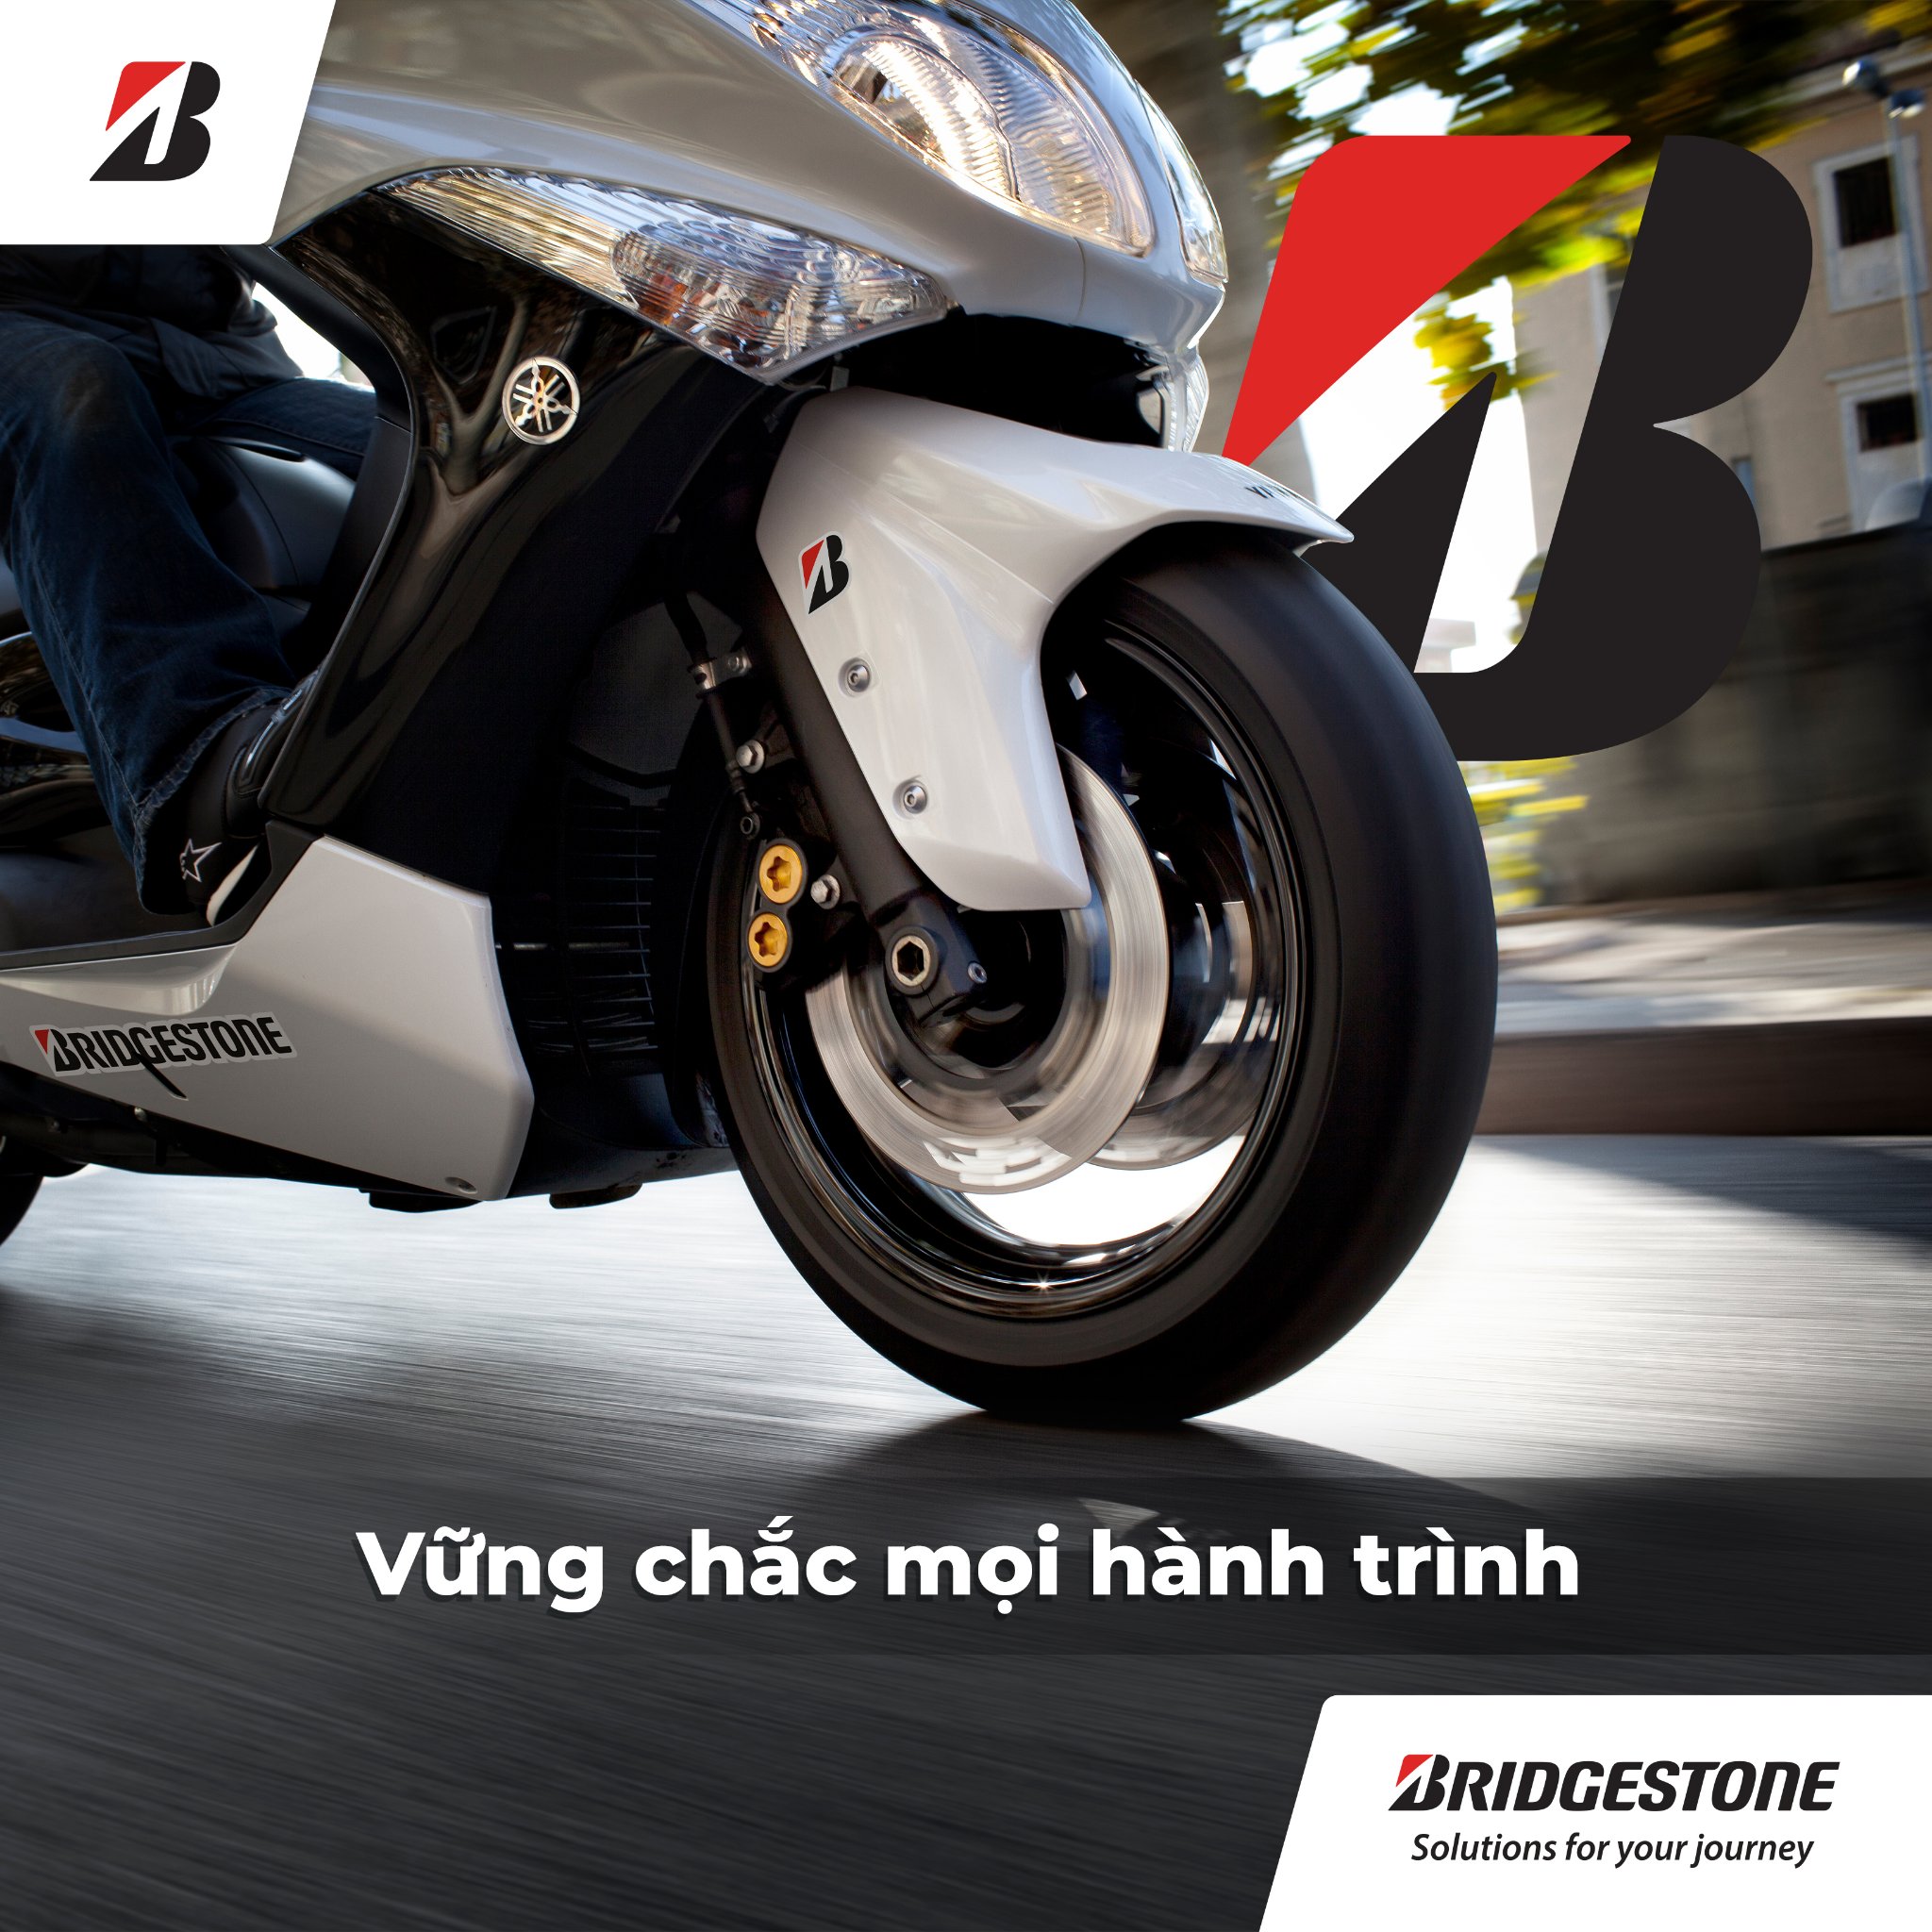 Nên chọn thương hiêu uy tín như Bridgestone để thay lốp xe máy